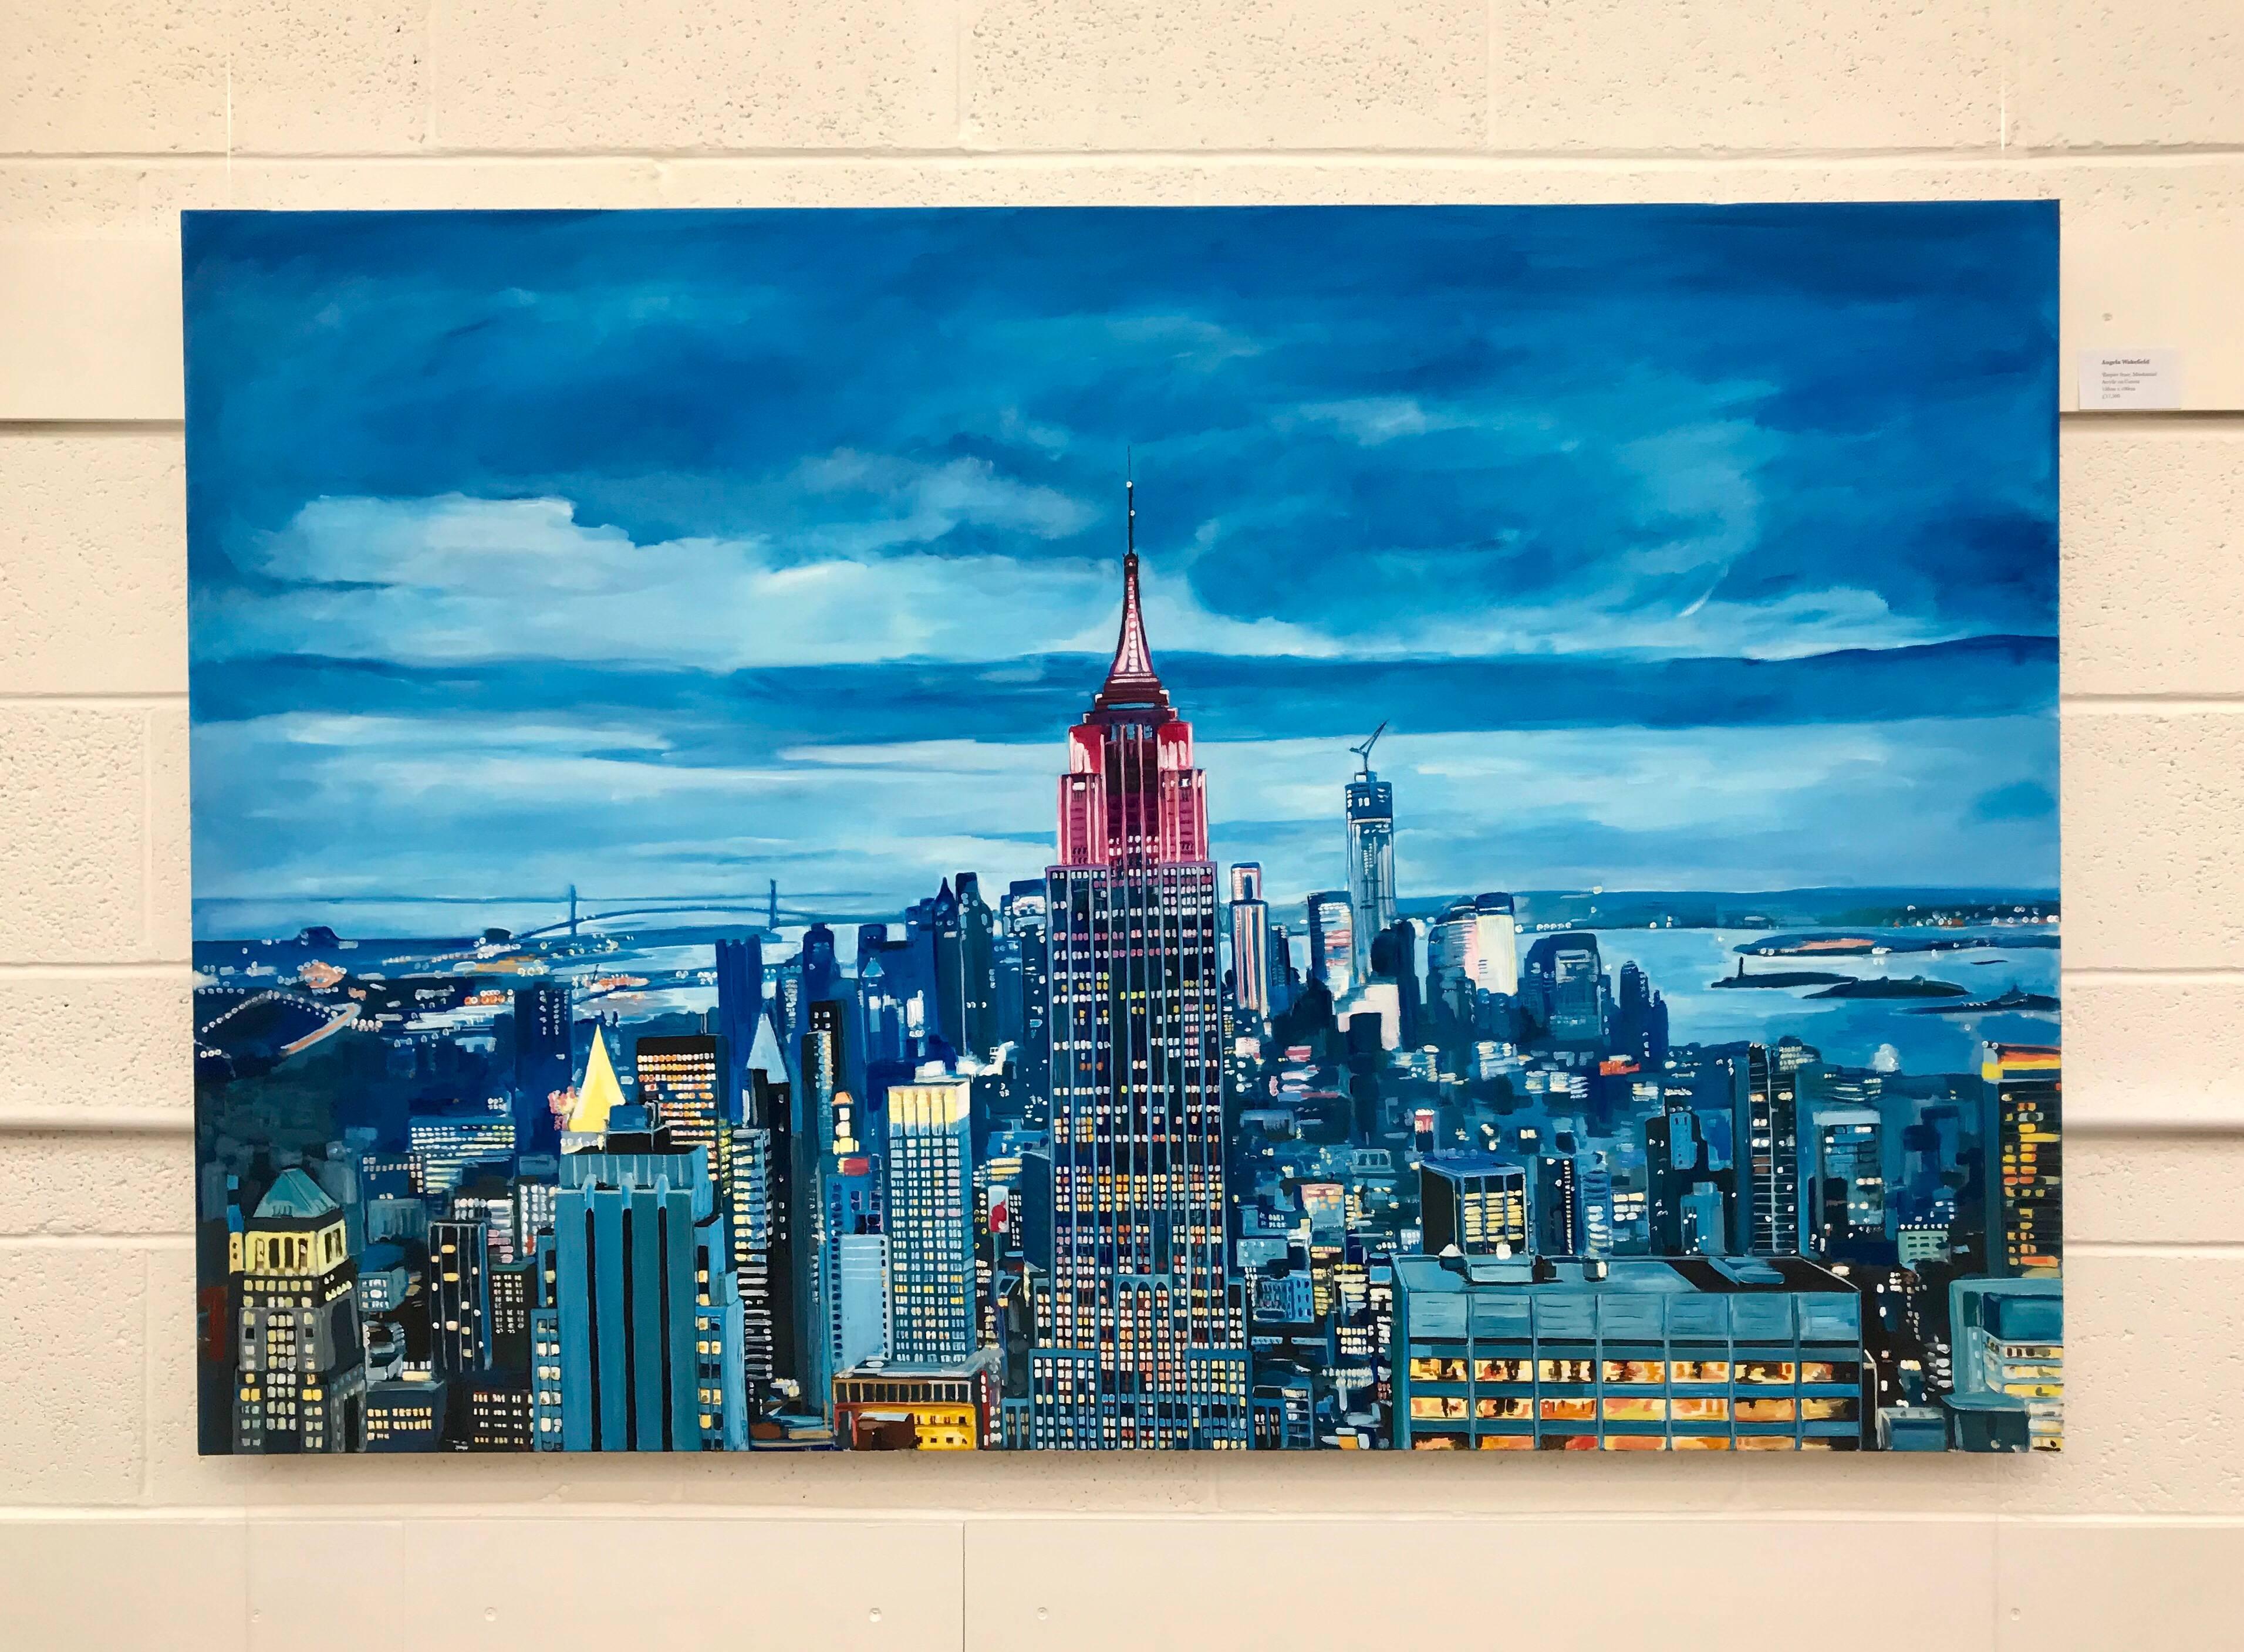 Empire State Building, Manhattan, peinture de paysage urbain, New York, par l'artiste paysagiste britannique. 

L'œuvre d'art mesure 60 x 40 pouces 

Le travail de Wakefield est un mélange unique d'abstraction et de réalisme, avec un accent